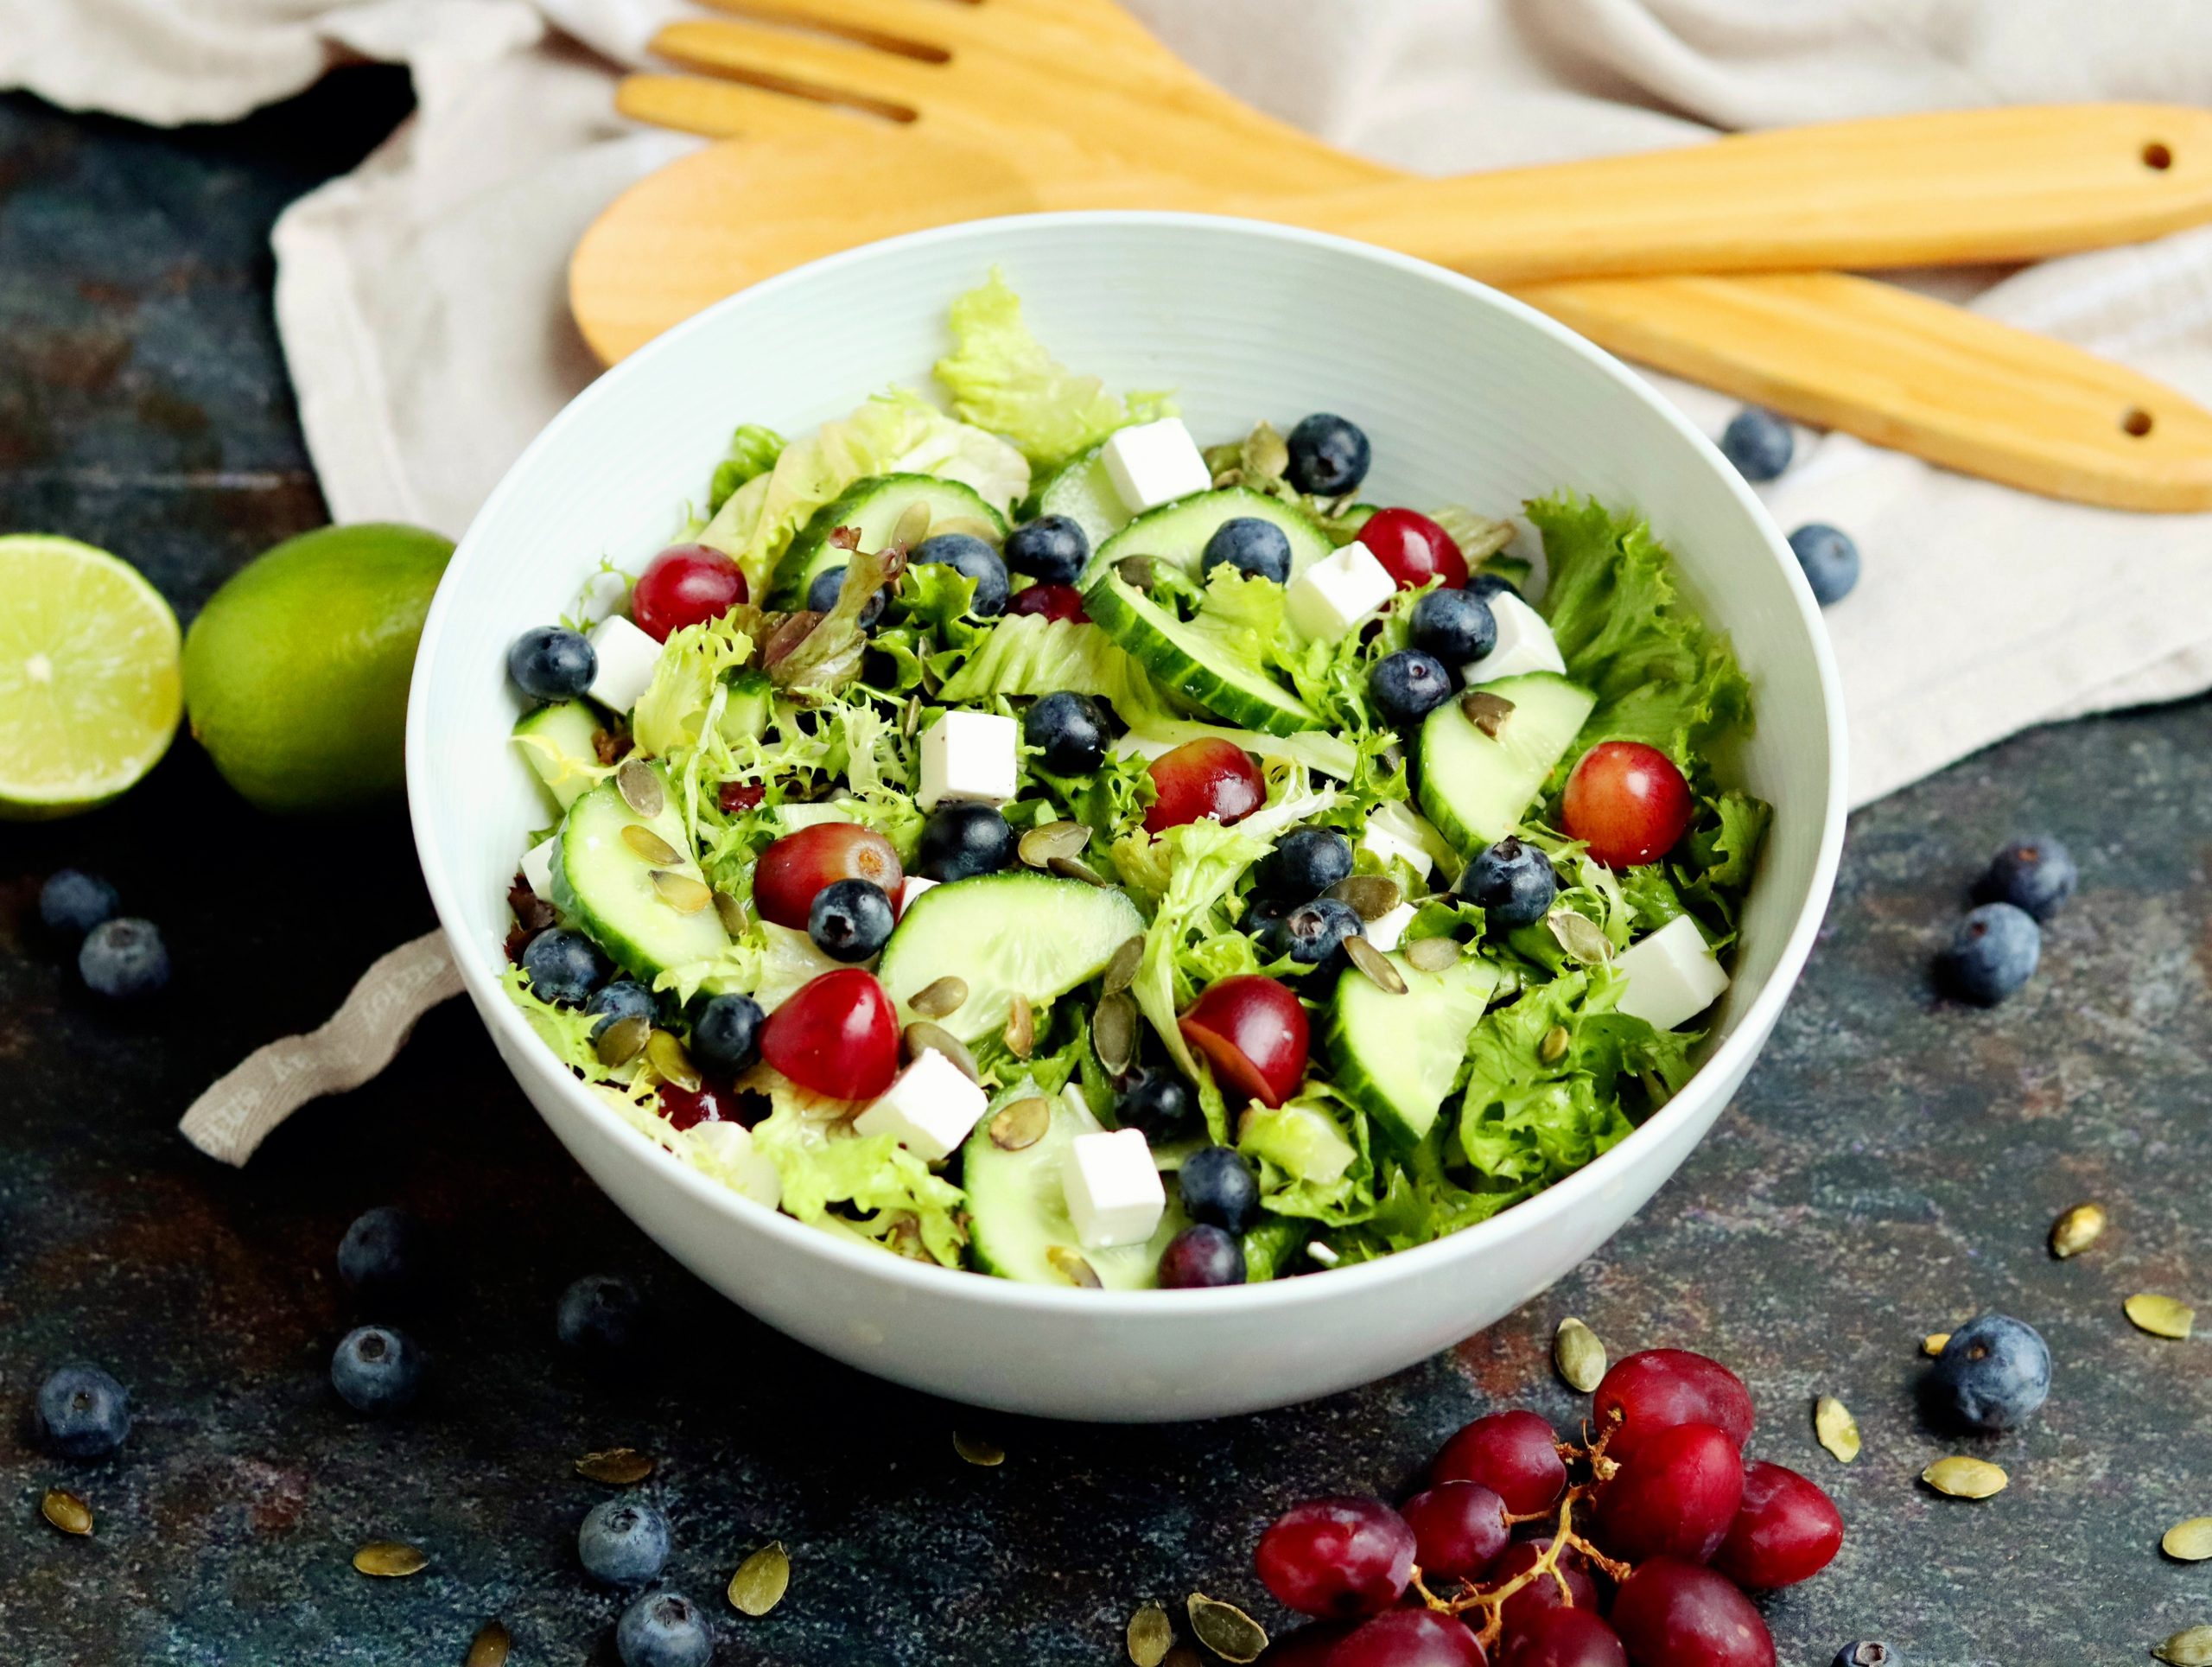 Salade met blauwe bessen en druiven(low FODMAP, glutenvrij, lactosevrij)